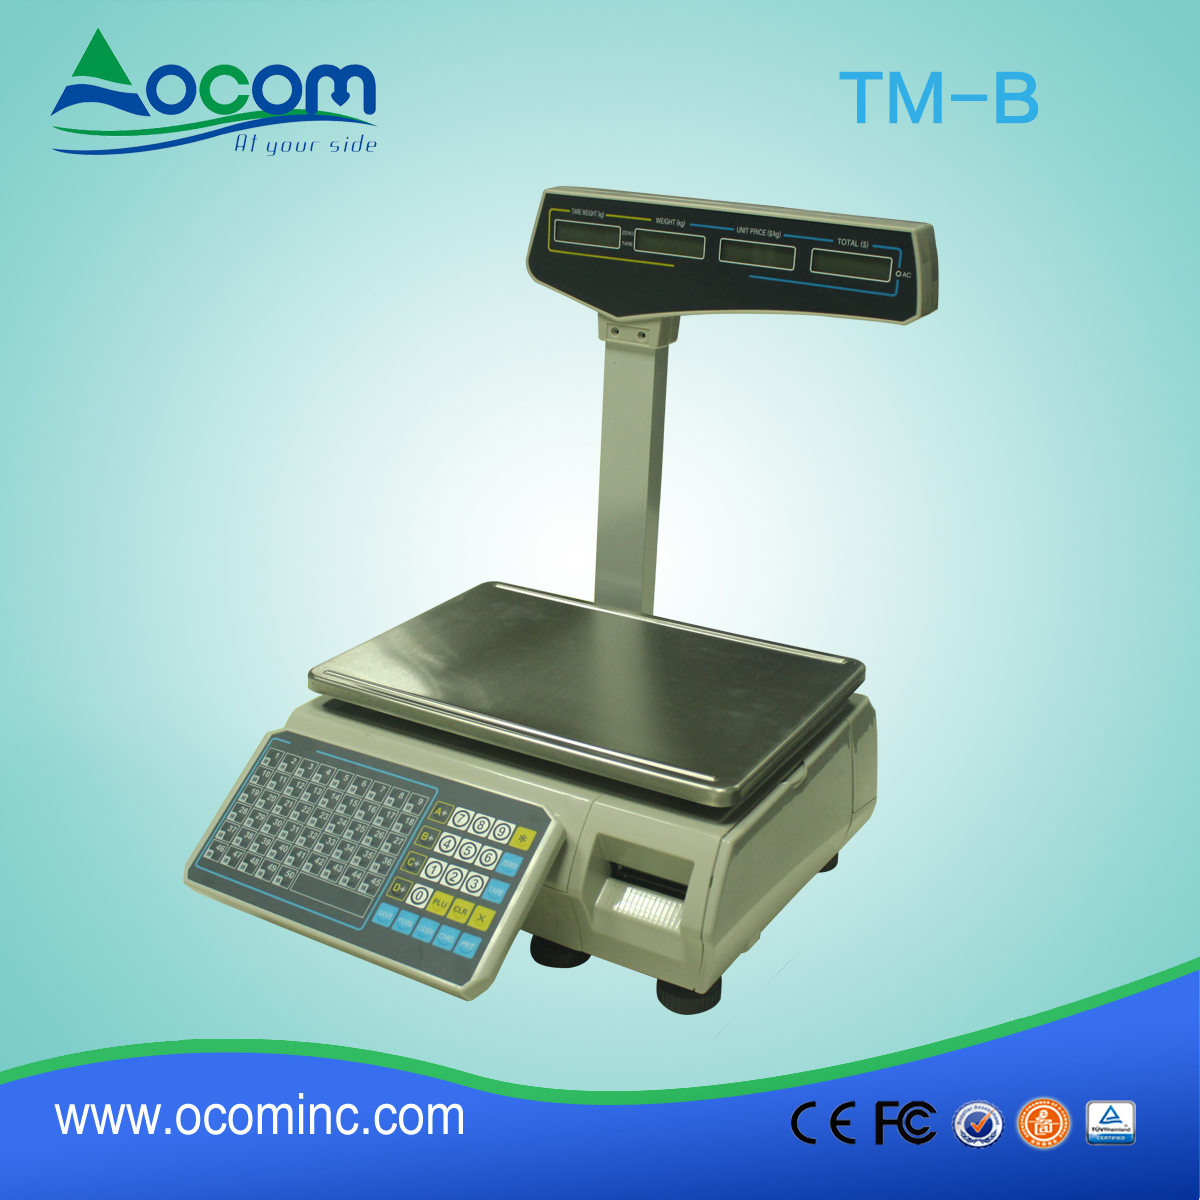 (TM-B) gorąco sprzedaży supermarket thermalprinter skali